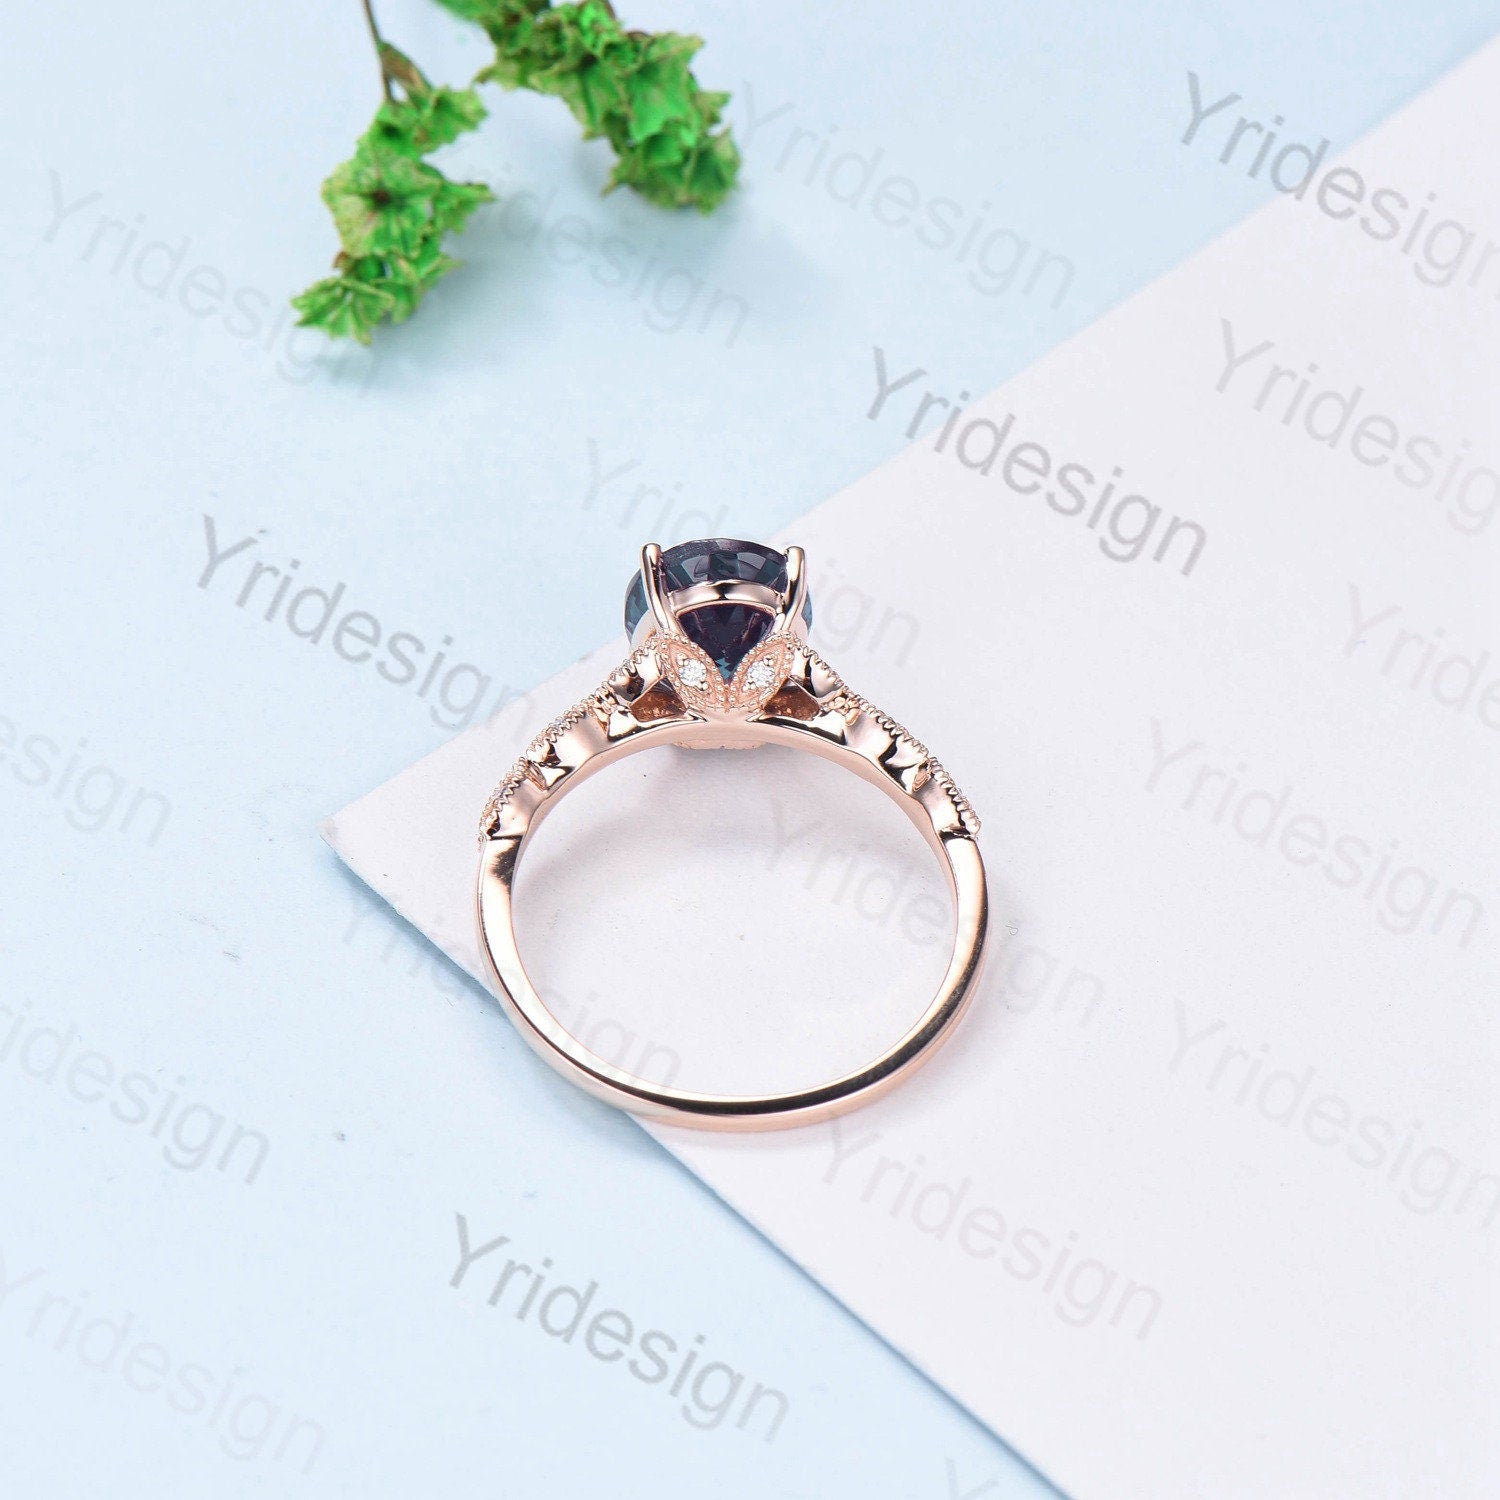 8X10mm Oval Alexandrite engagement ring Split shank art deco moissanite diamond wedding ring women Milgrain June birthstone anniversary gift - PENFINE